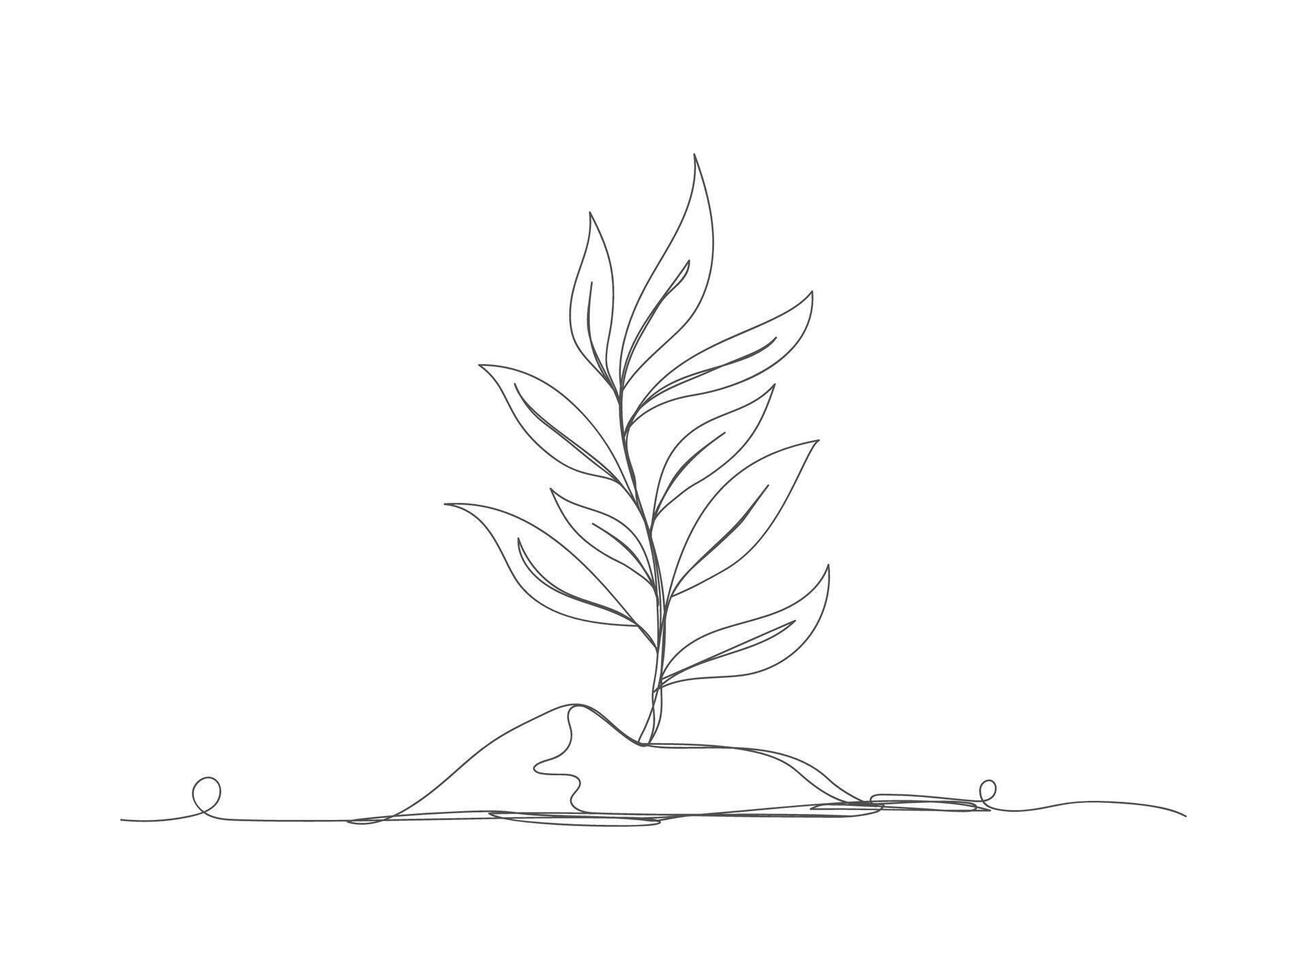 doorlopend een lijn tekening van groeit fabriek spruiten vector illustratie.